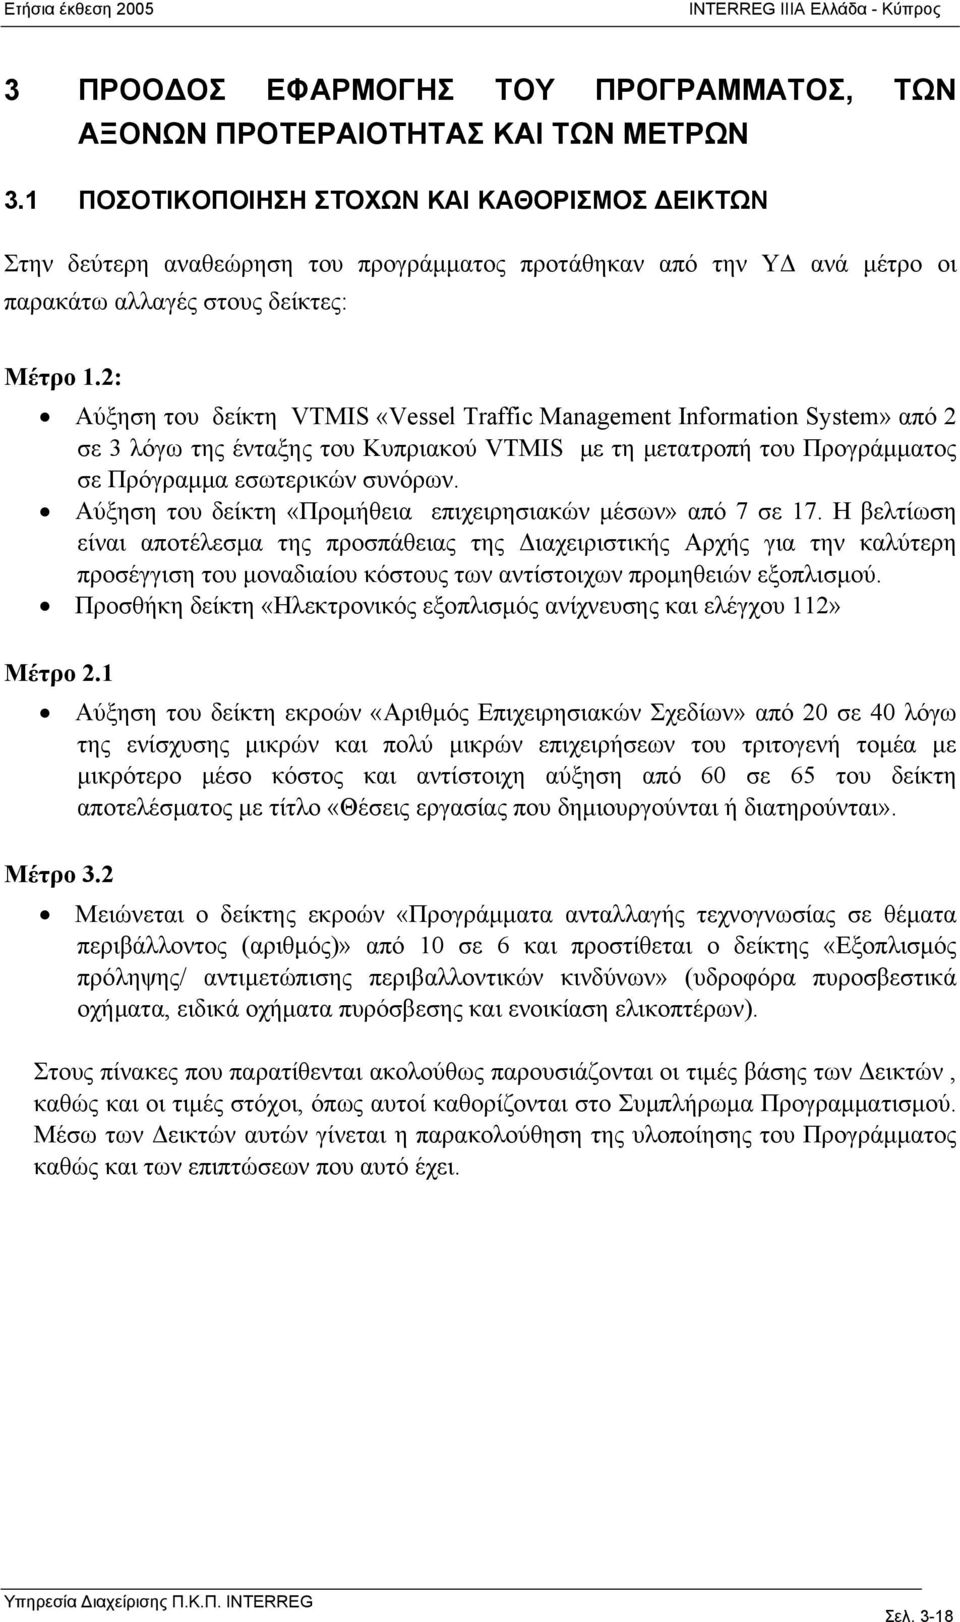 2: Αύξηση του δείκτη VTMIS «Vessel Traffic Management Information System» από 2 σε 3 λόγω της ένταξης του Κυπριακού VTMIS με τη μετατροπή του Προγράμματος σε Πρόγραμμα εσωτερικών συνόρων.